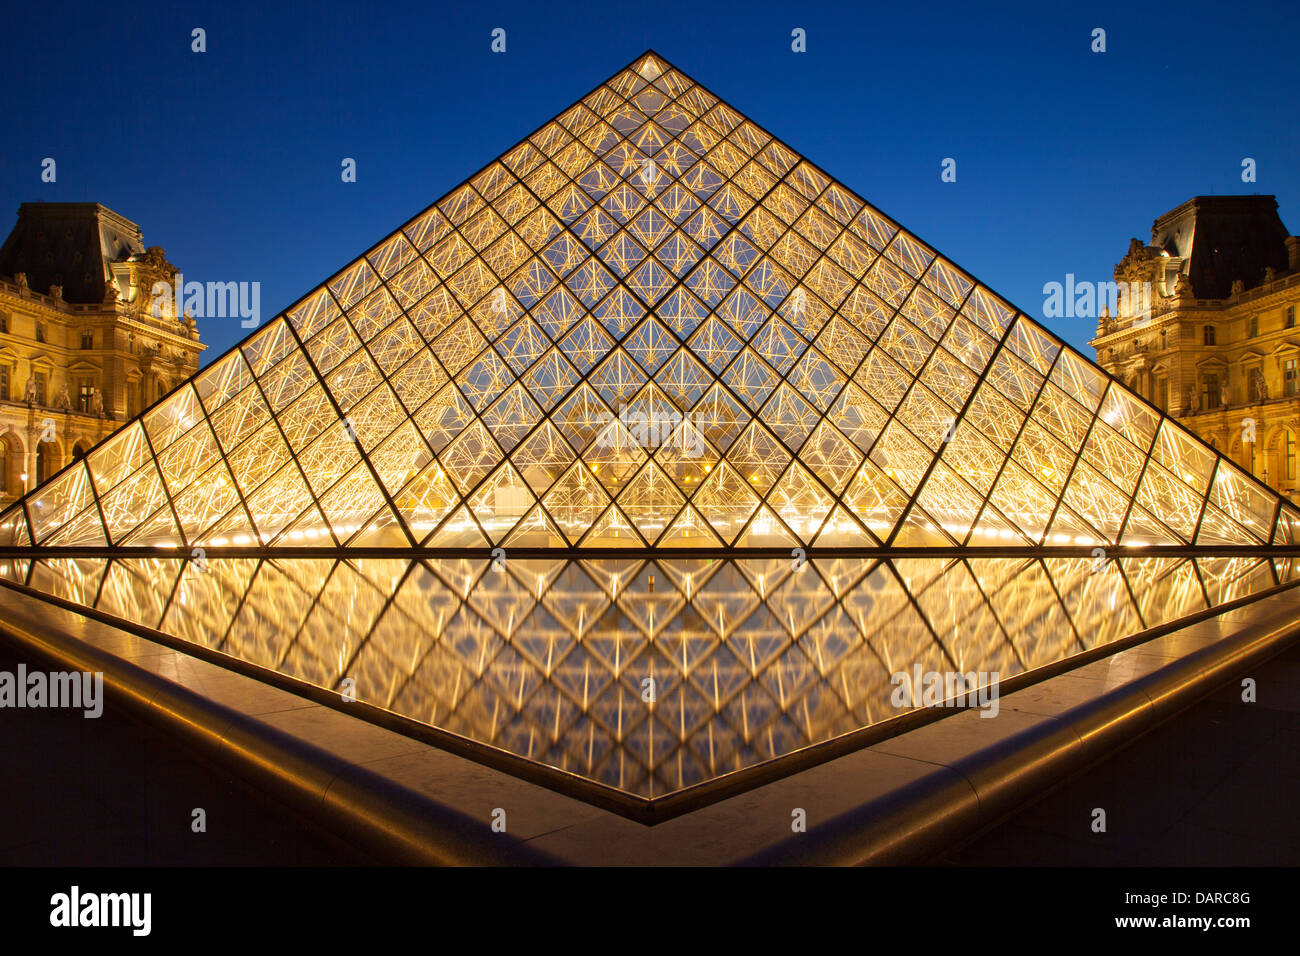 La piramide di vetro in ingresso al Musee du Louvre, Parigi Francia Foto Stock